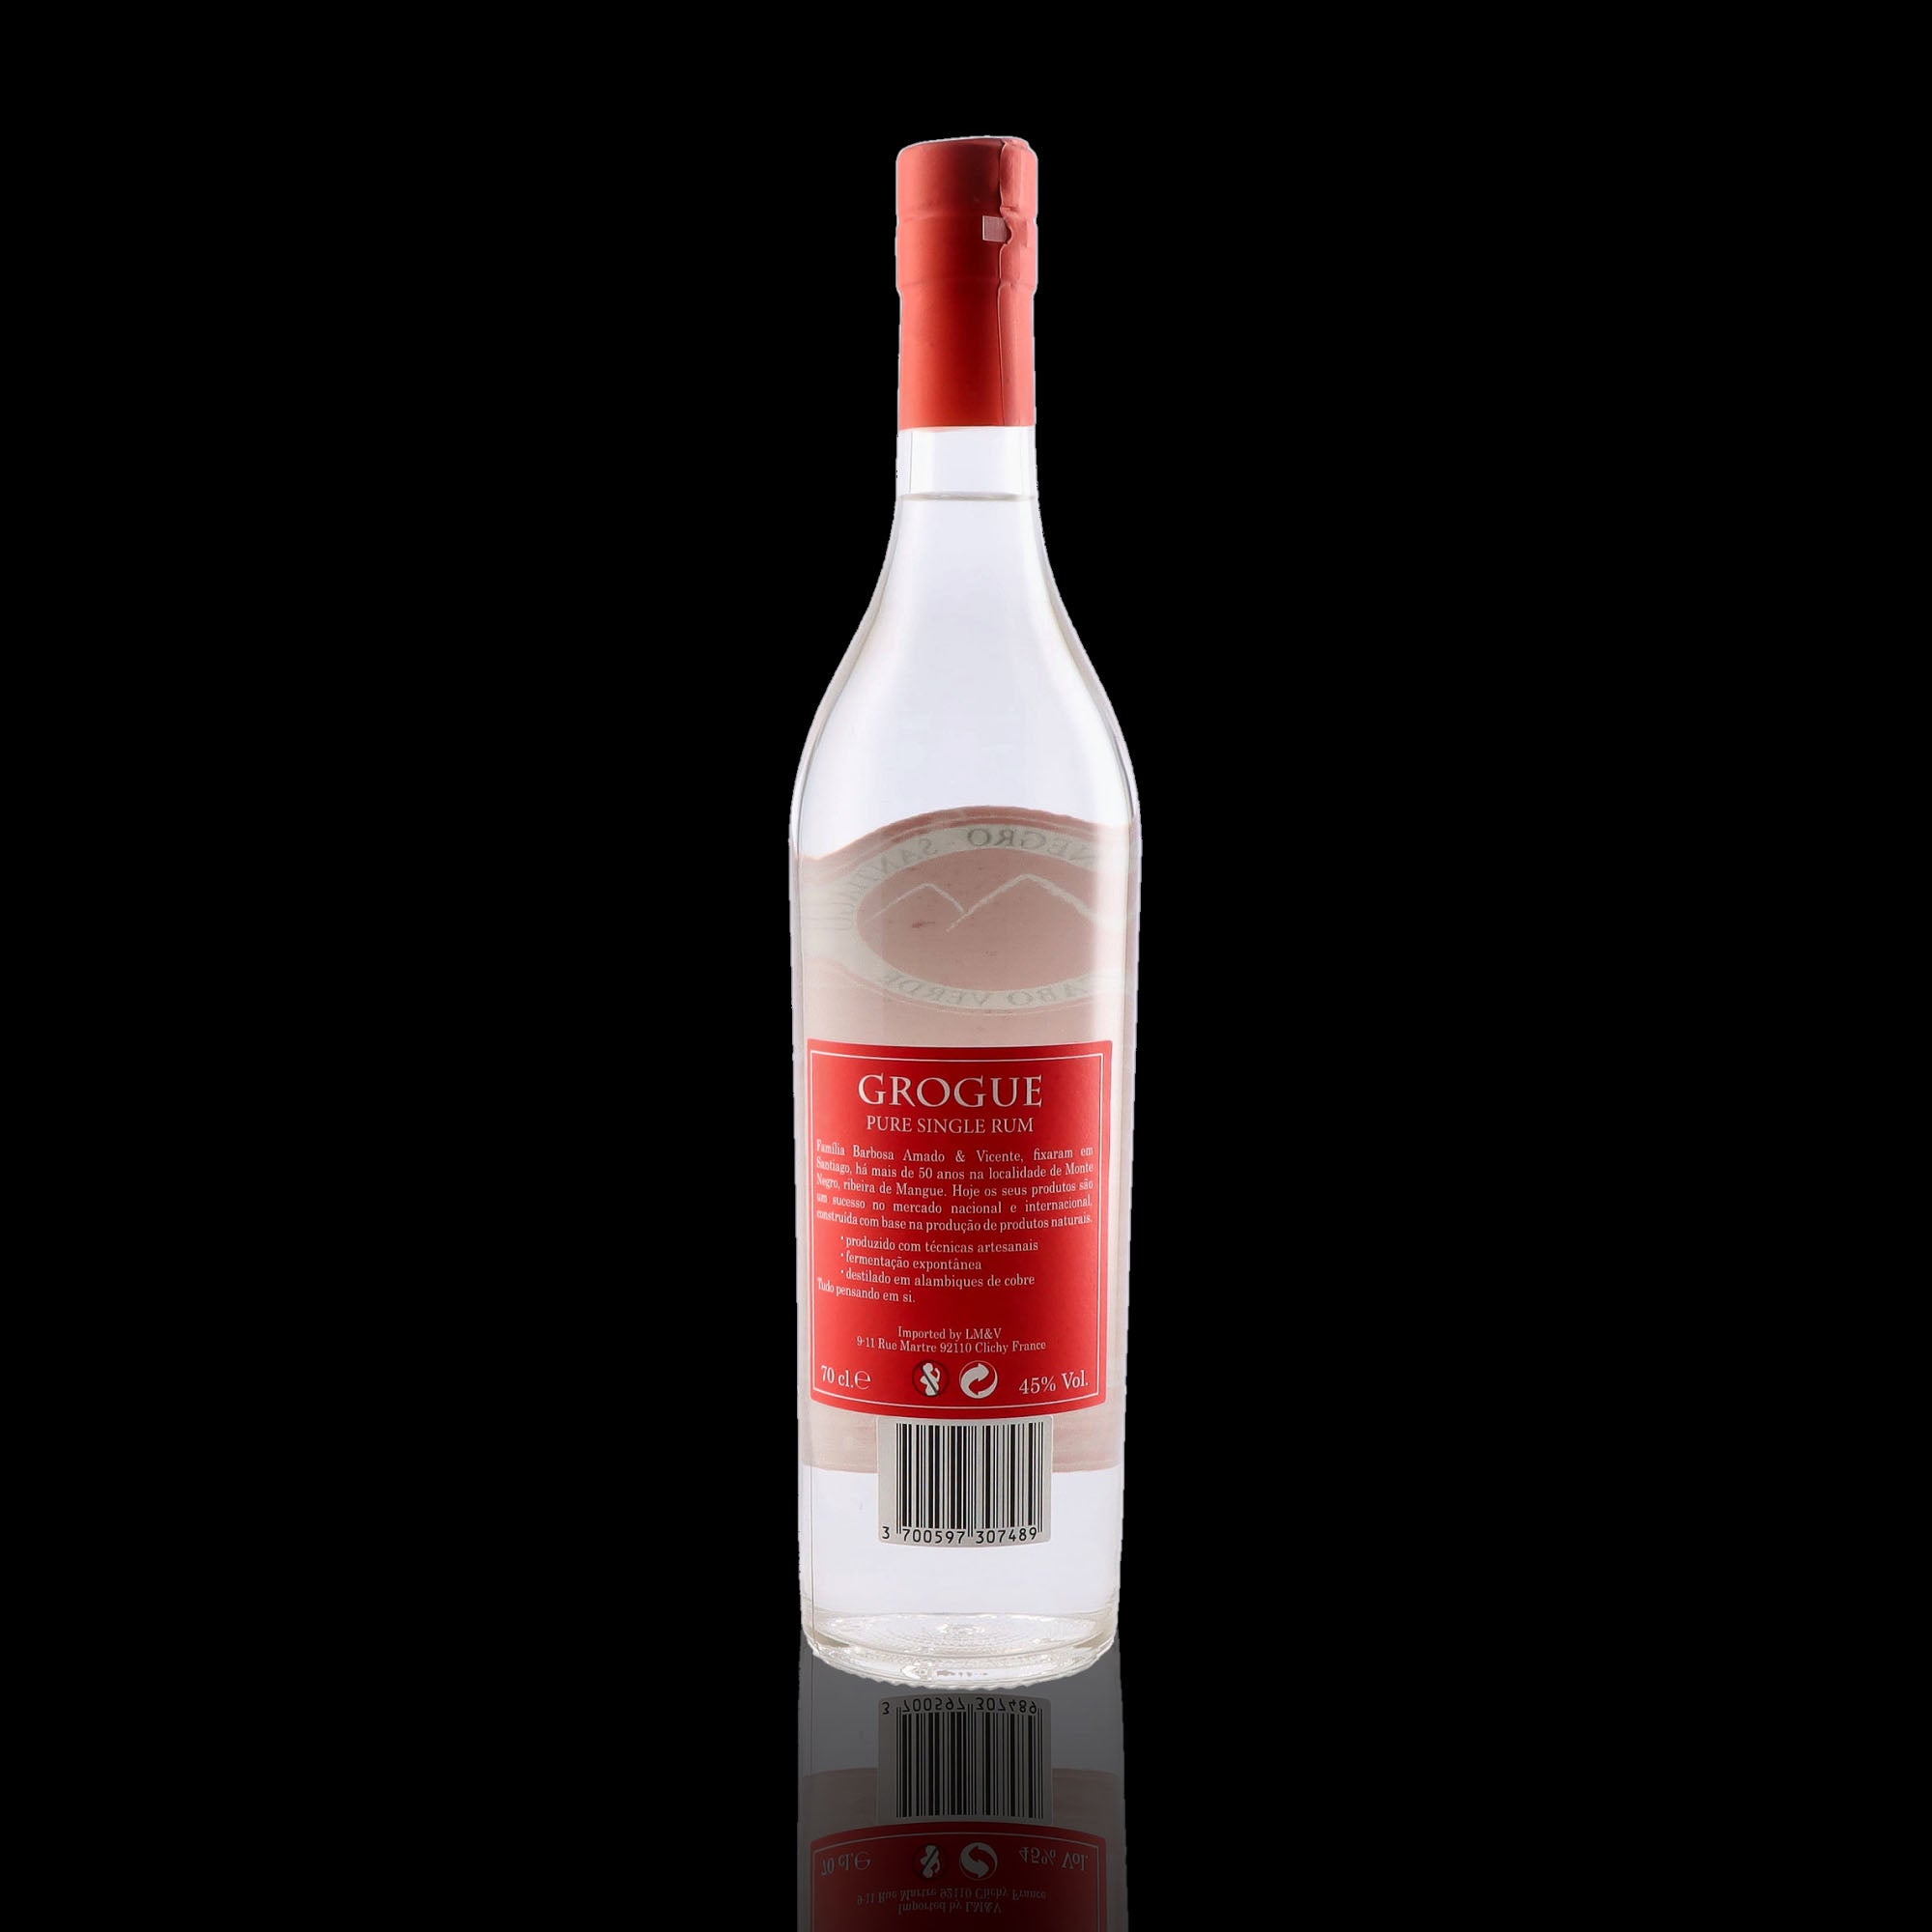 Une bouteille de rhum blanc, de la marque Barbosa, nommée Amado et Vicente.